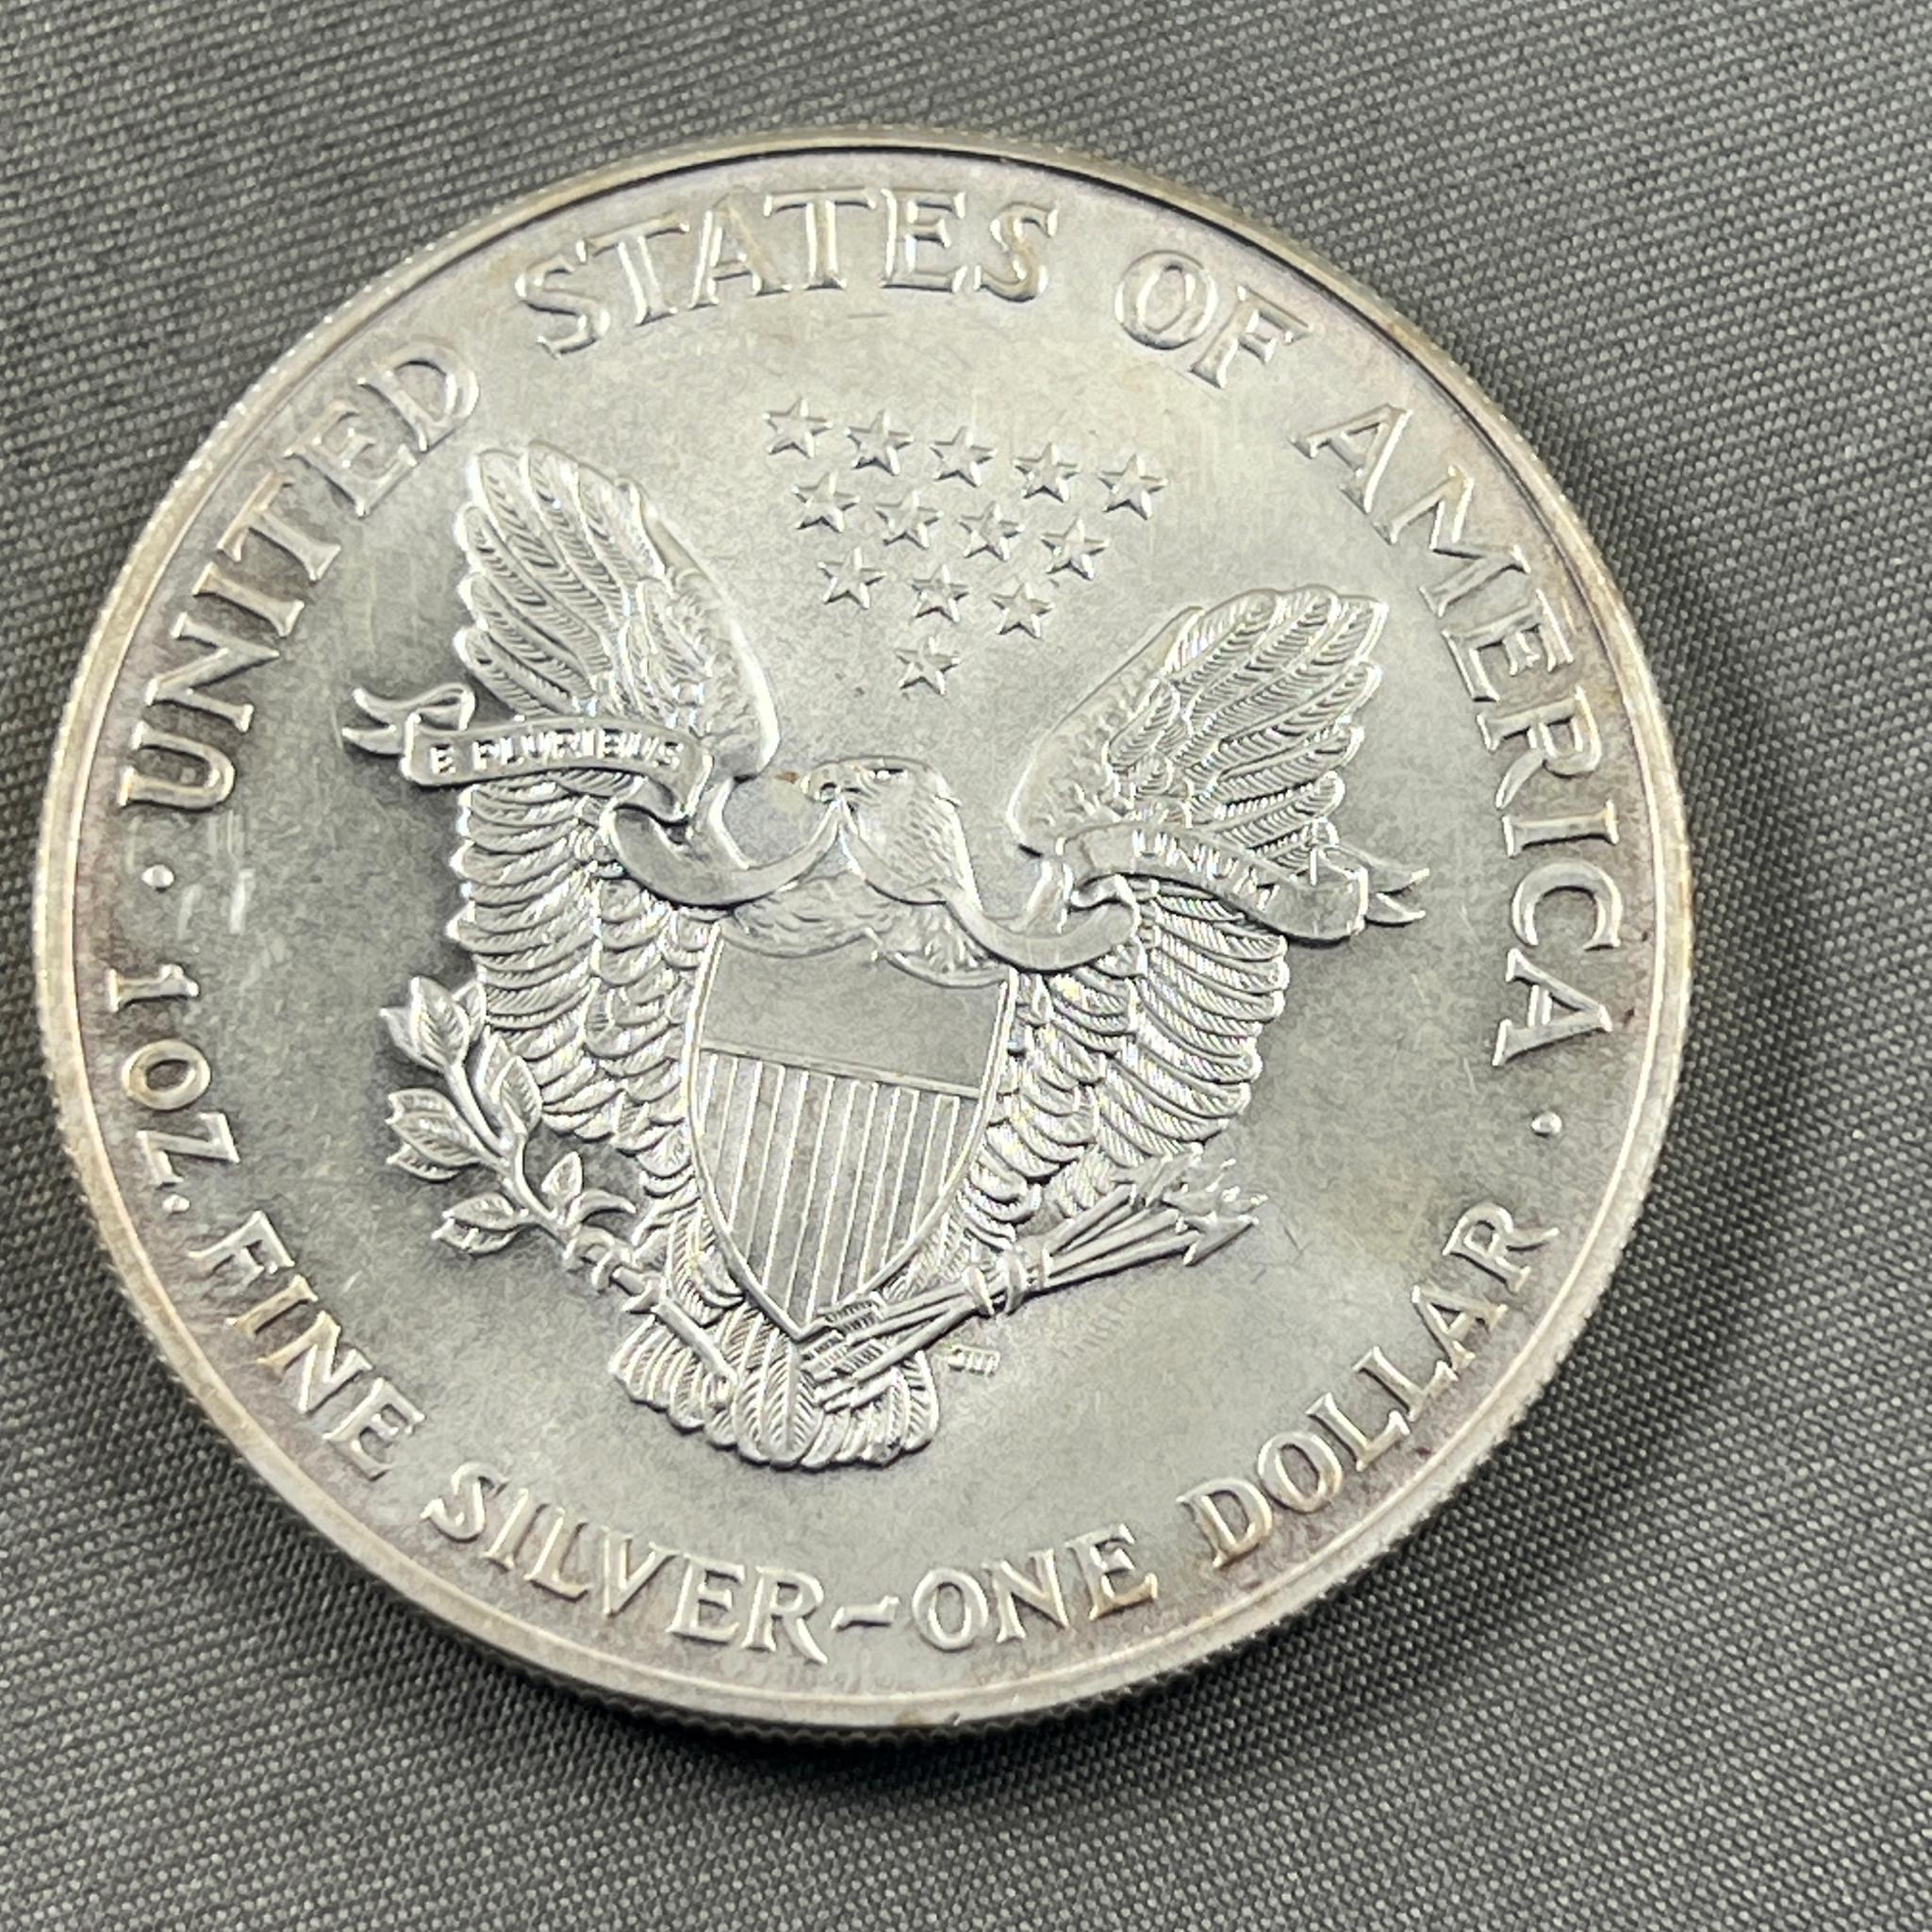 2000 US Silver Eagle, .999 Silver UNC